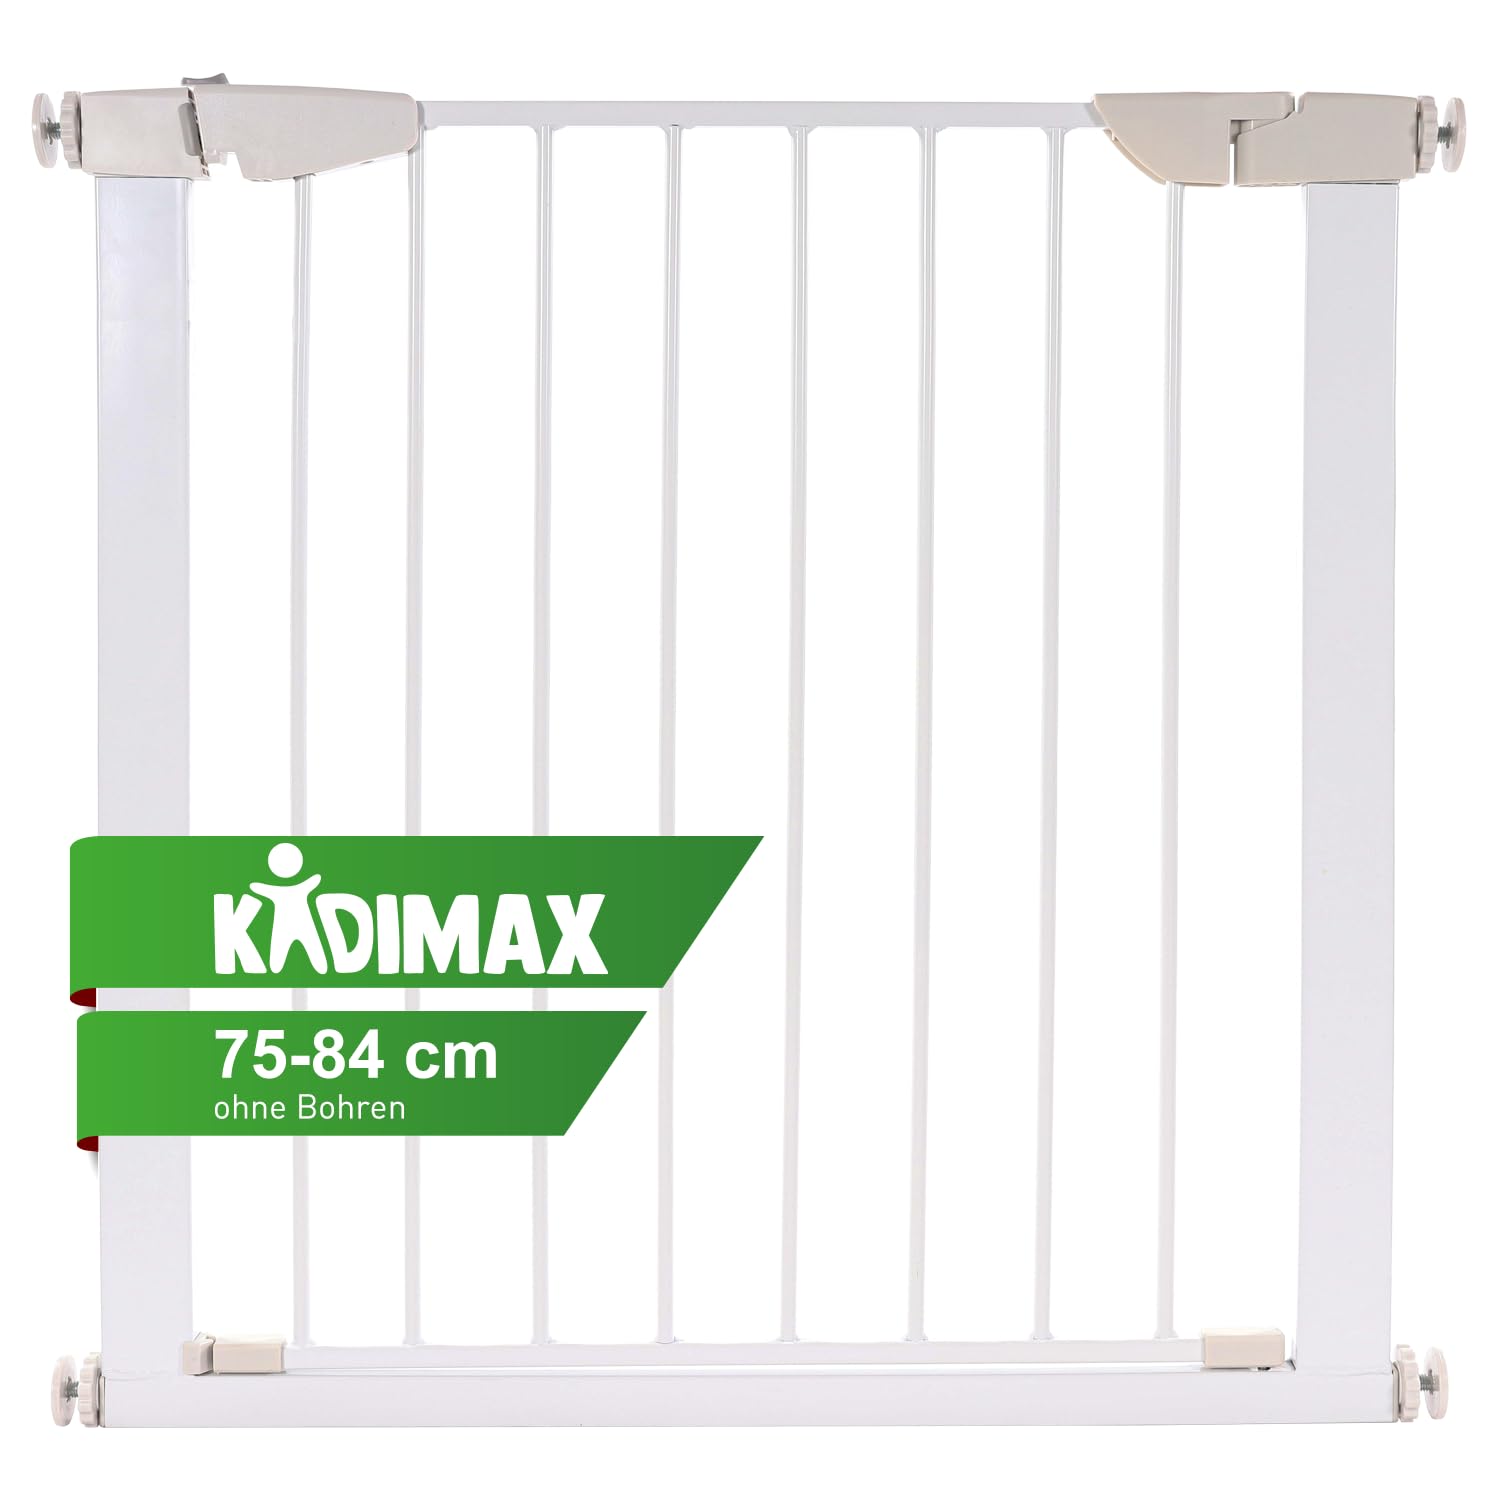 KIDIMAX Treppenschutzgitter 75-84 cm, ohne Bohren, Türschutzgitter für Kinder, Hunde und Katzen, mit Auto-Close & Keep-Open Funktion, Treppengitter weiß